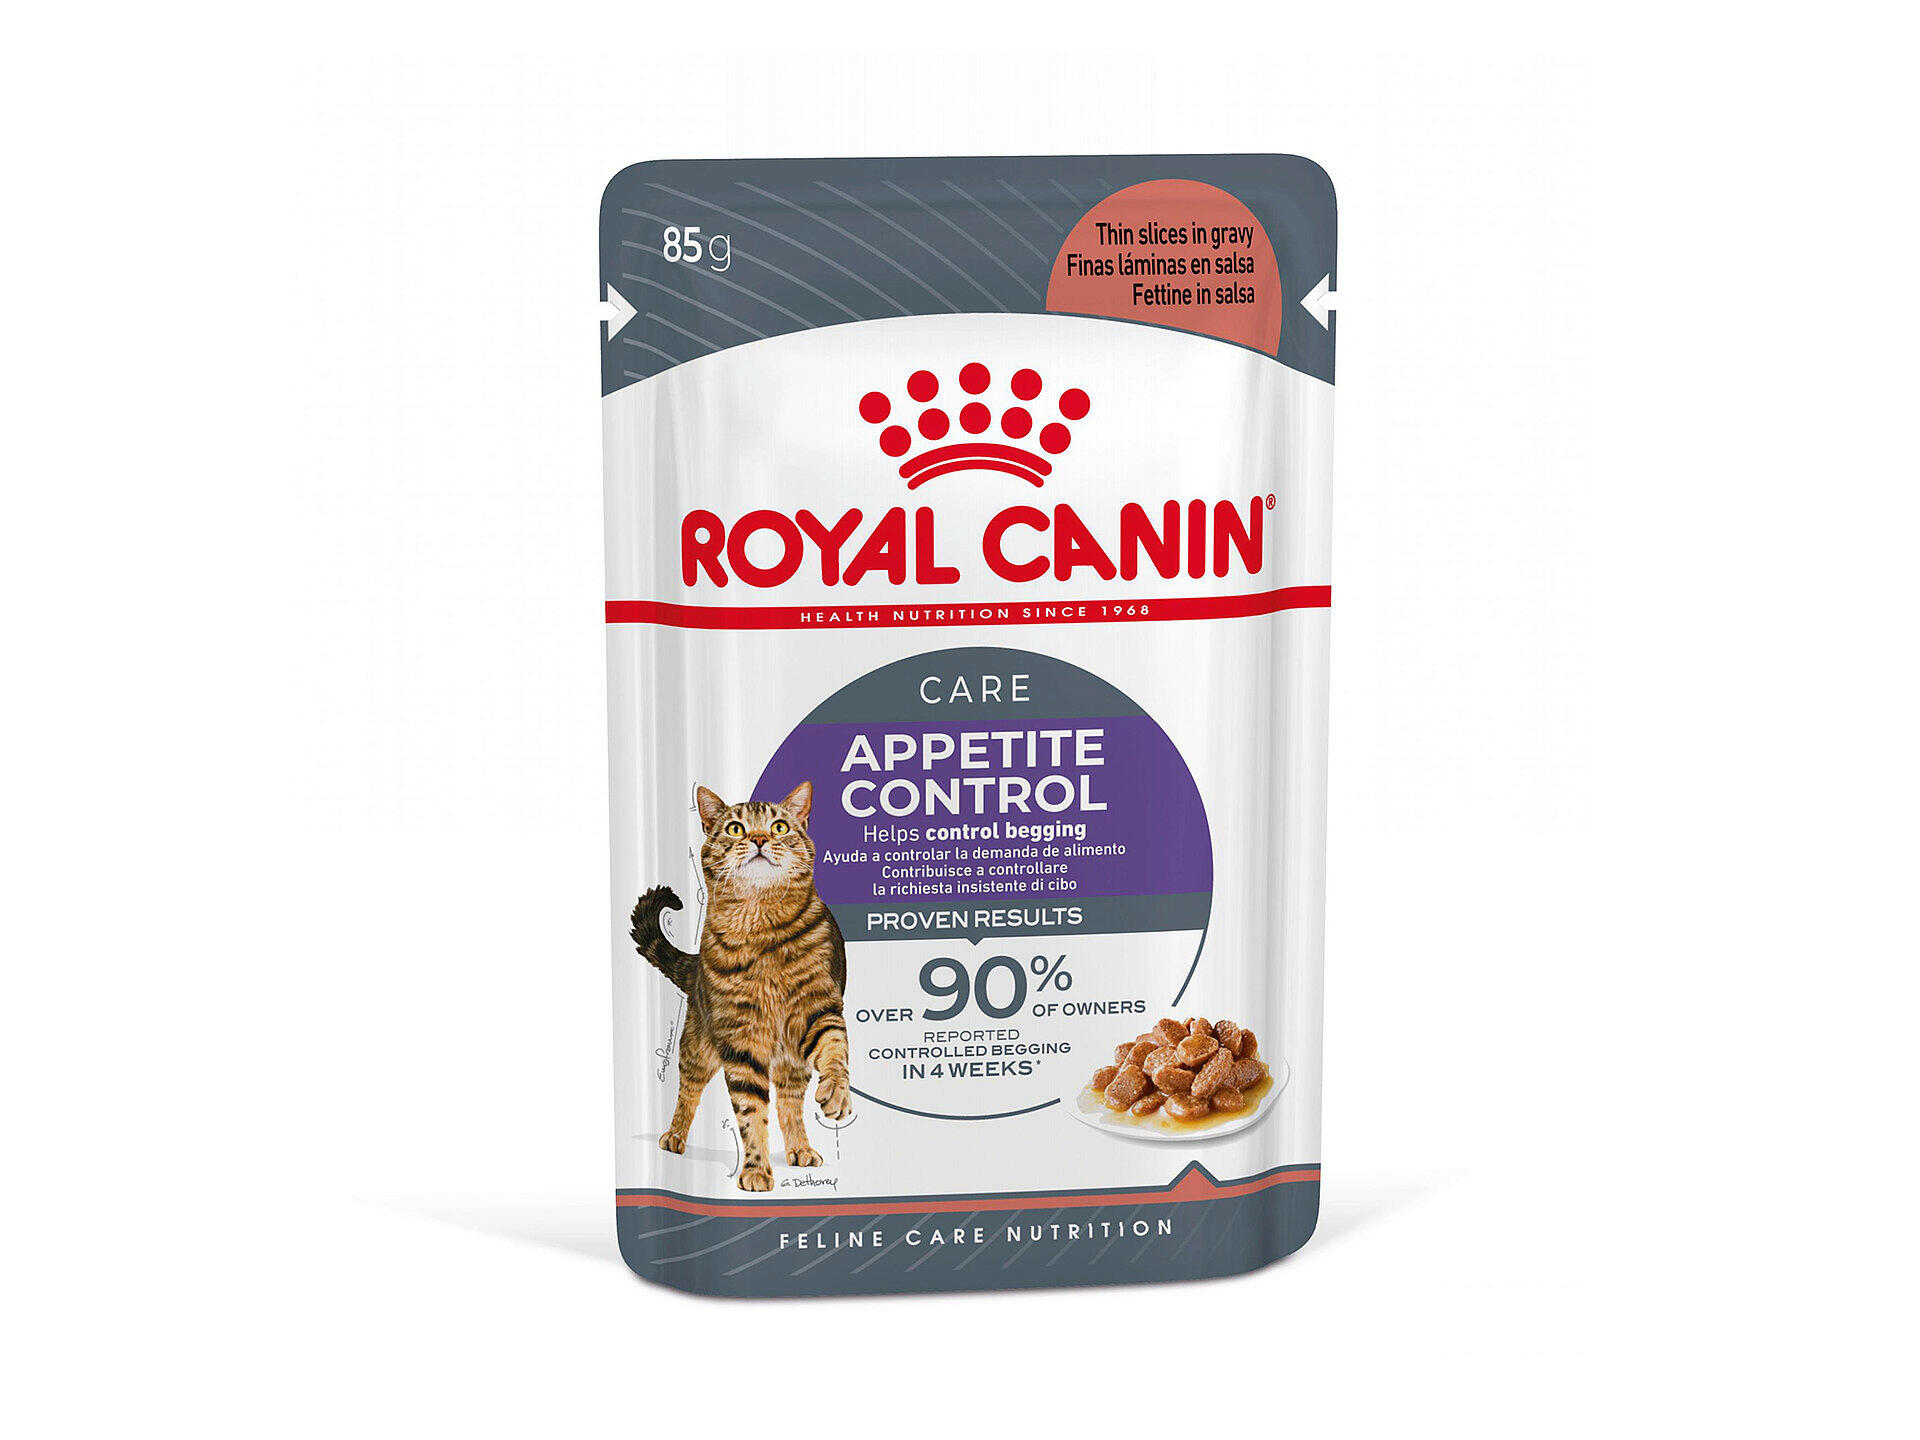 Feline Care Nutrition Appetite Control Gravy nourriture chat 12x85 g